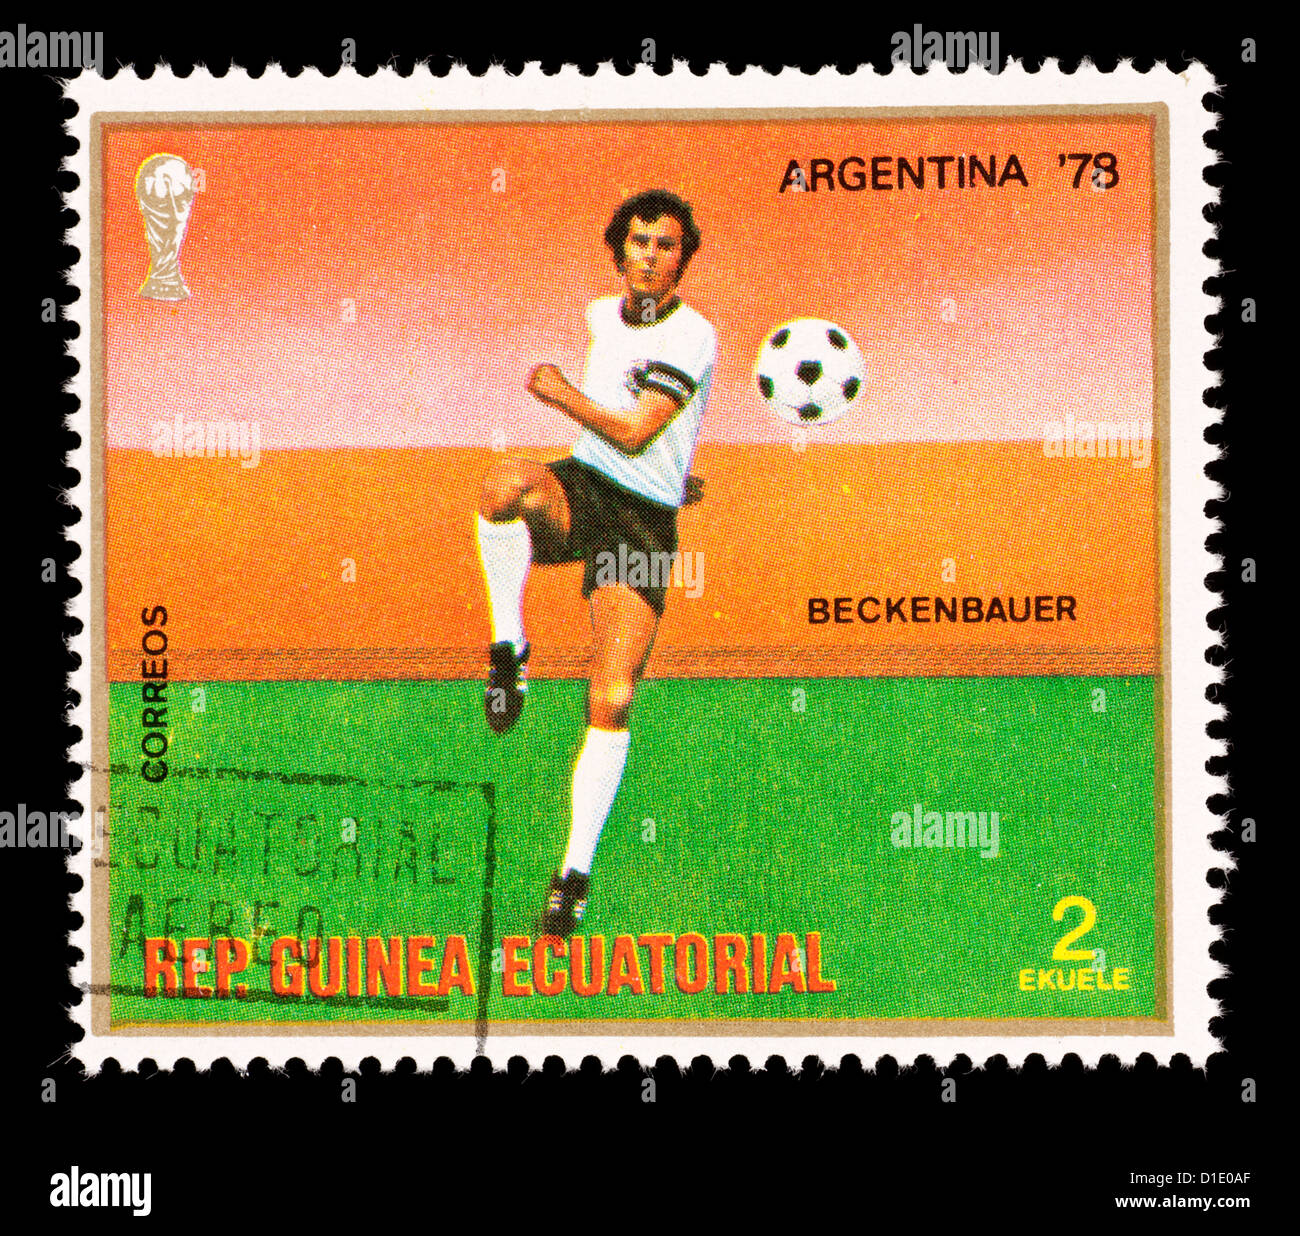 Francobollo dalla Guinea equatoriale raffigurante un giocatore di calcio, rilasciati per il 1978 Coppa del mondo. Foto Stock